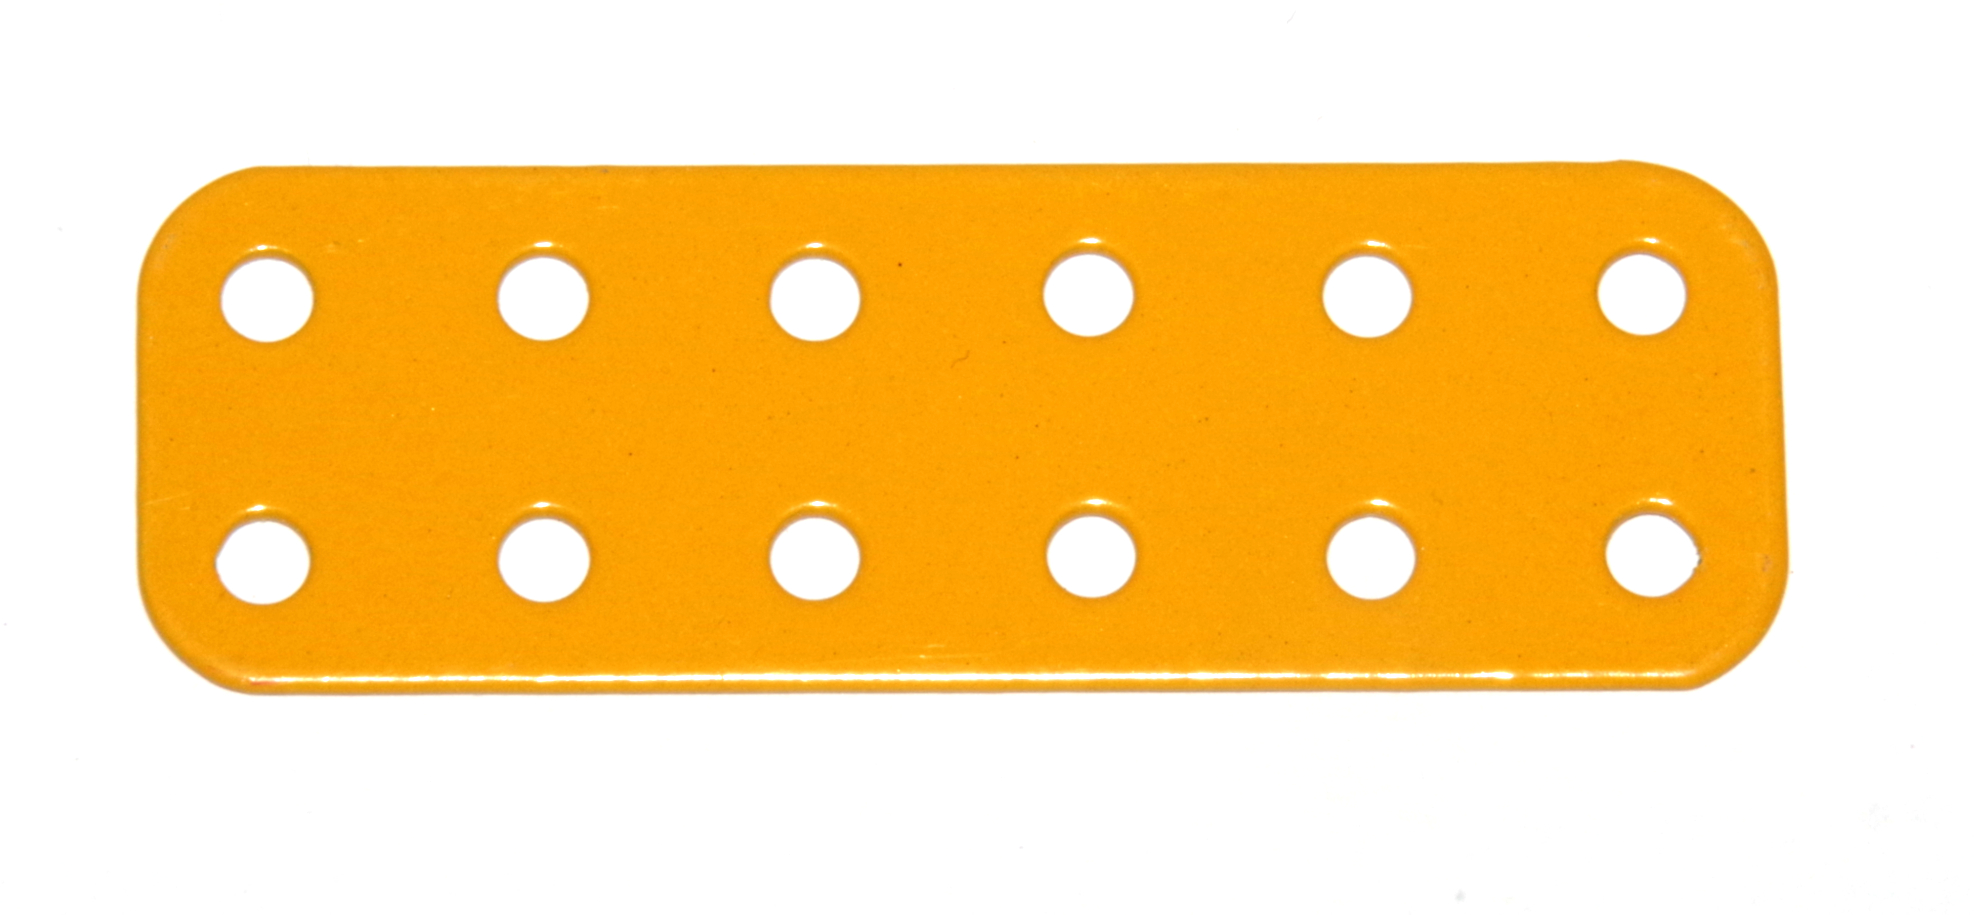 73e Flat Plate 2x6 Hole UK Yellow